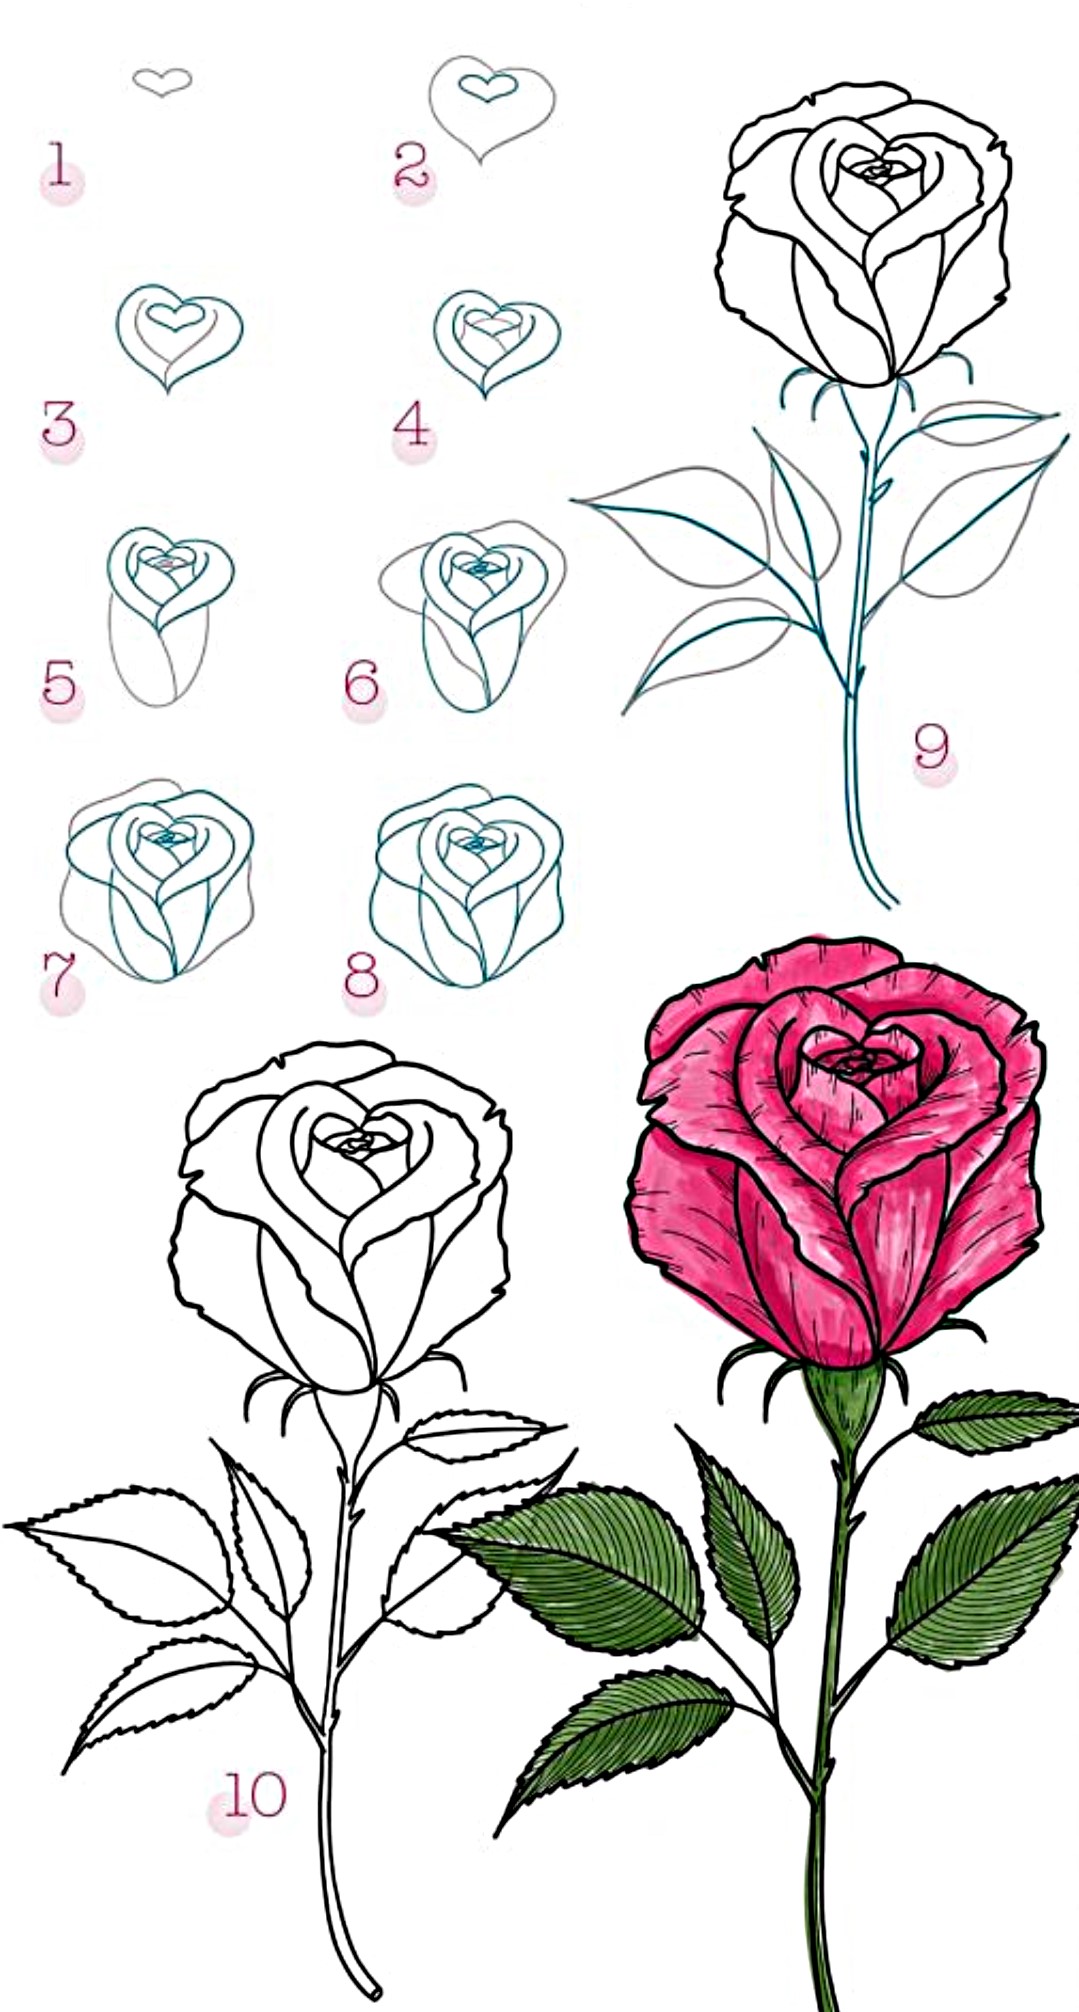 Hướng dẫn Cách vẽ hoa tulip đơn giản nhất cho người mới bắt đầu